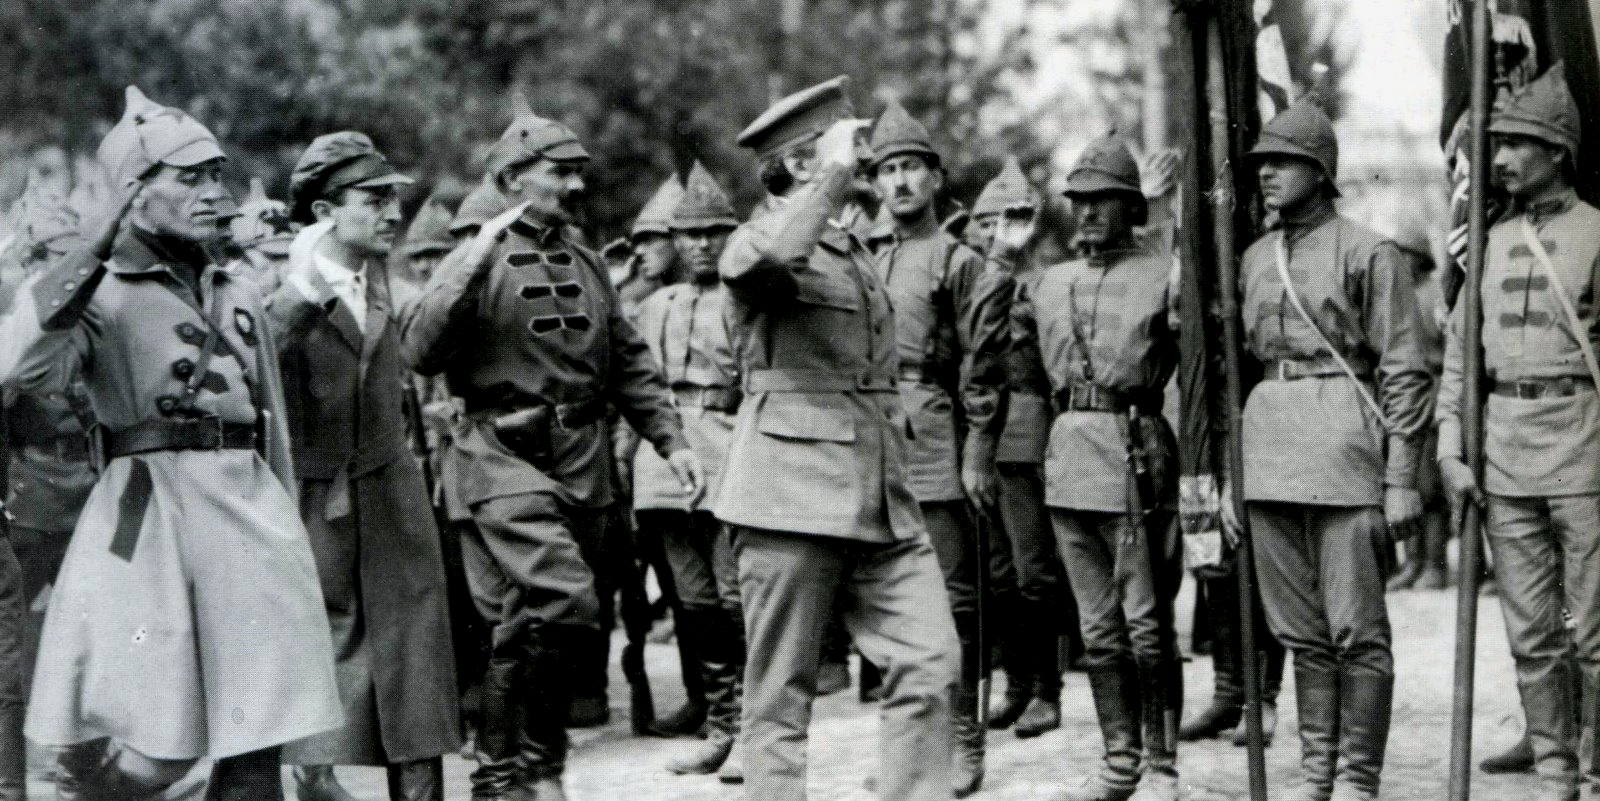 Военный министр Троцкий инспектирует войска. Войска хорошо обмундированы  и вооружены